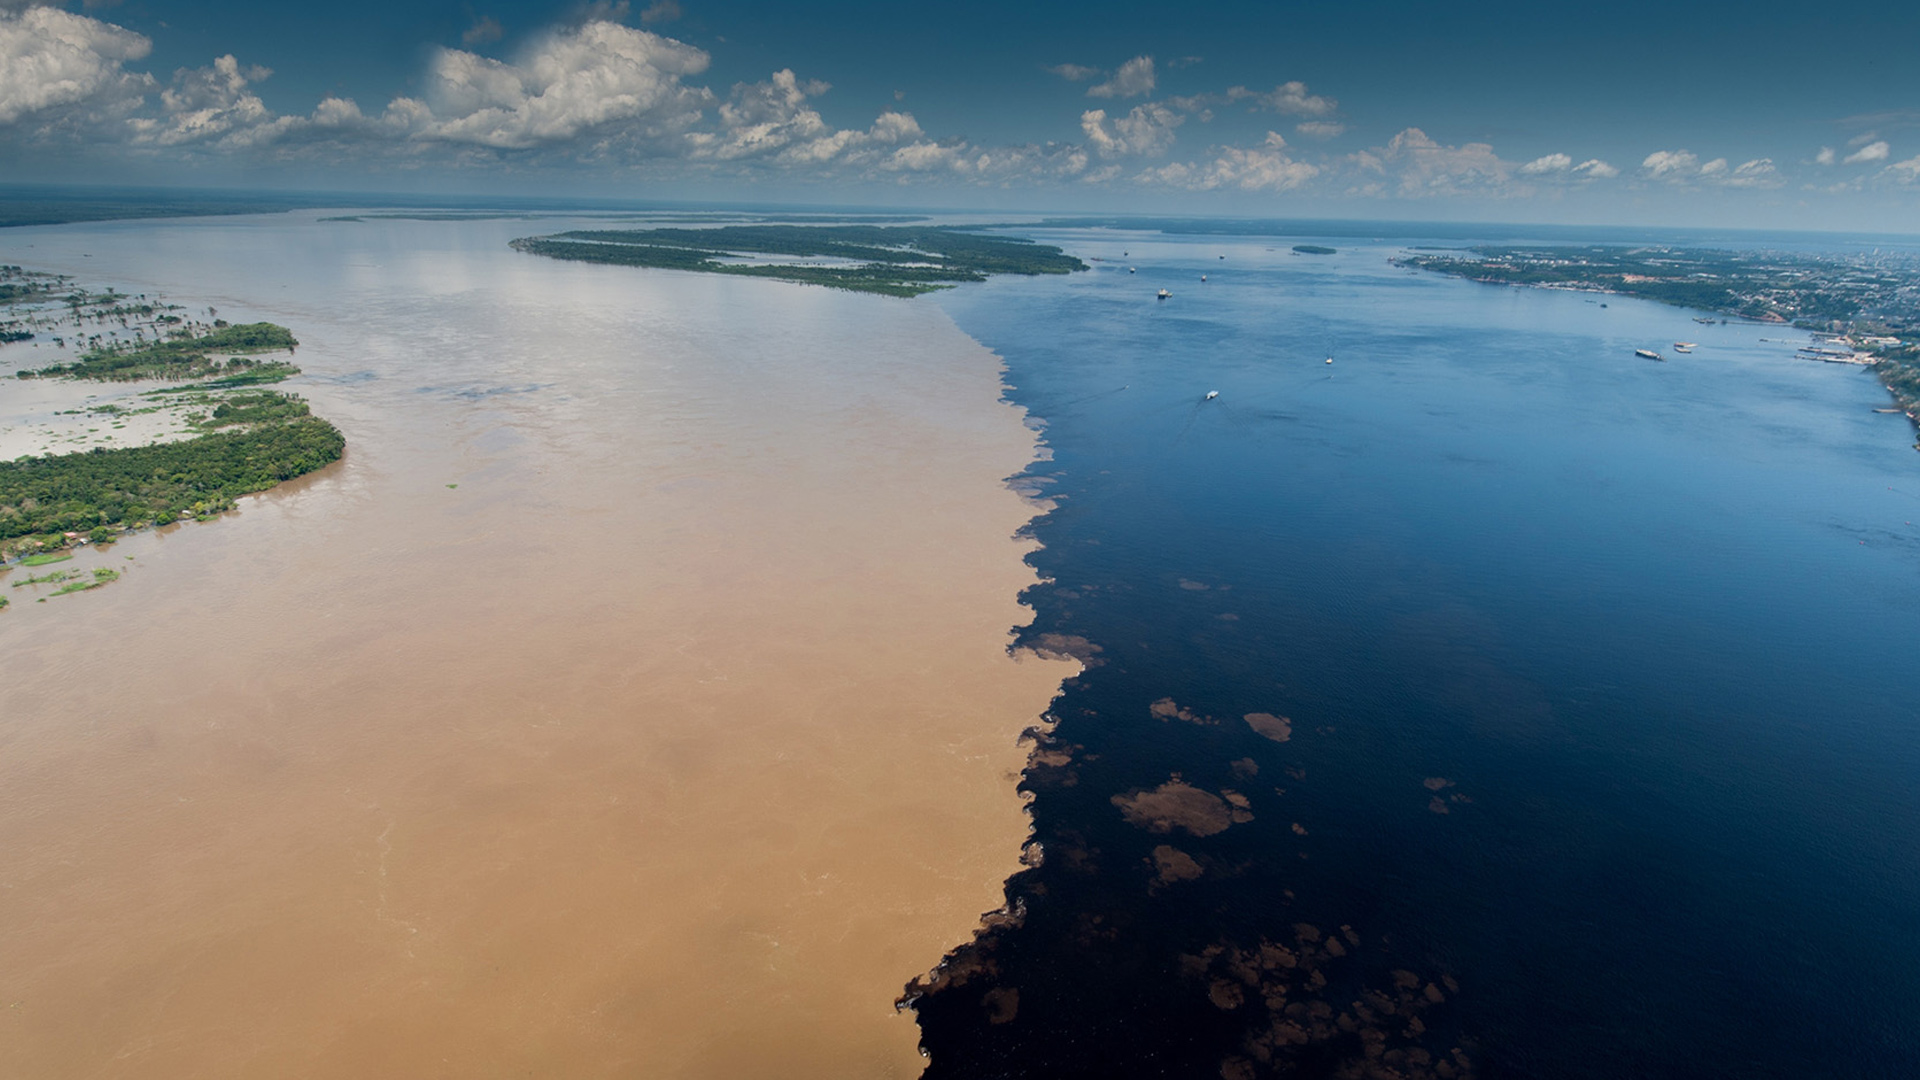 Vista aérea do encontro das águas dos rios Negro e Solimões, na Amazônia